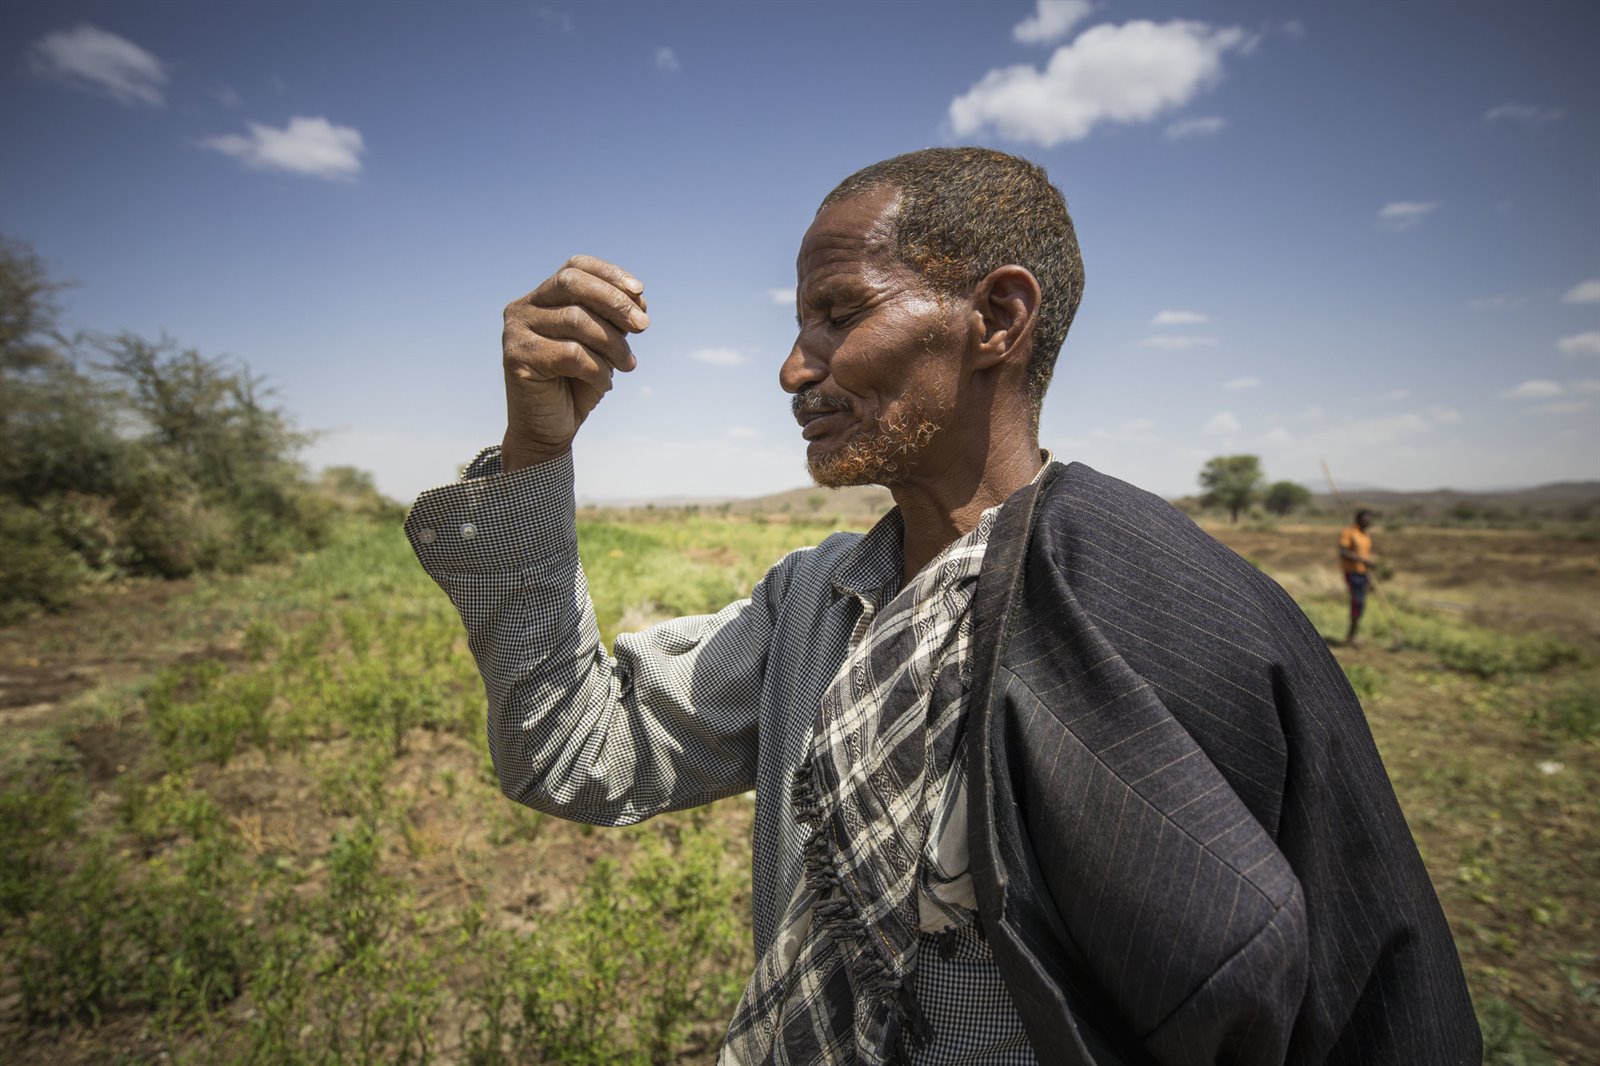 Achmed sprinkhanenplaag ethiopie - jaarverslag 